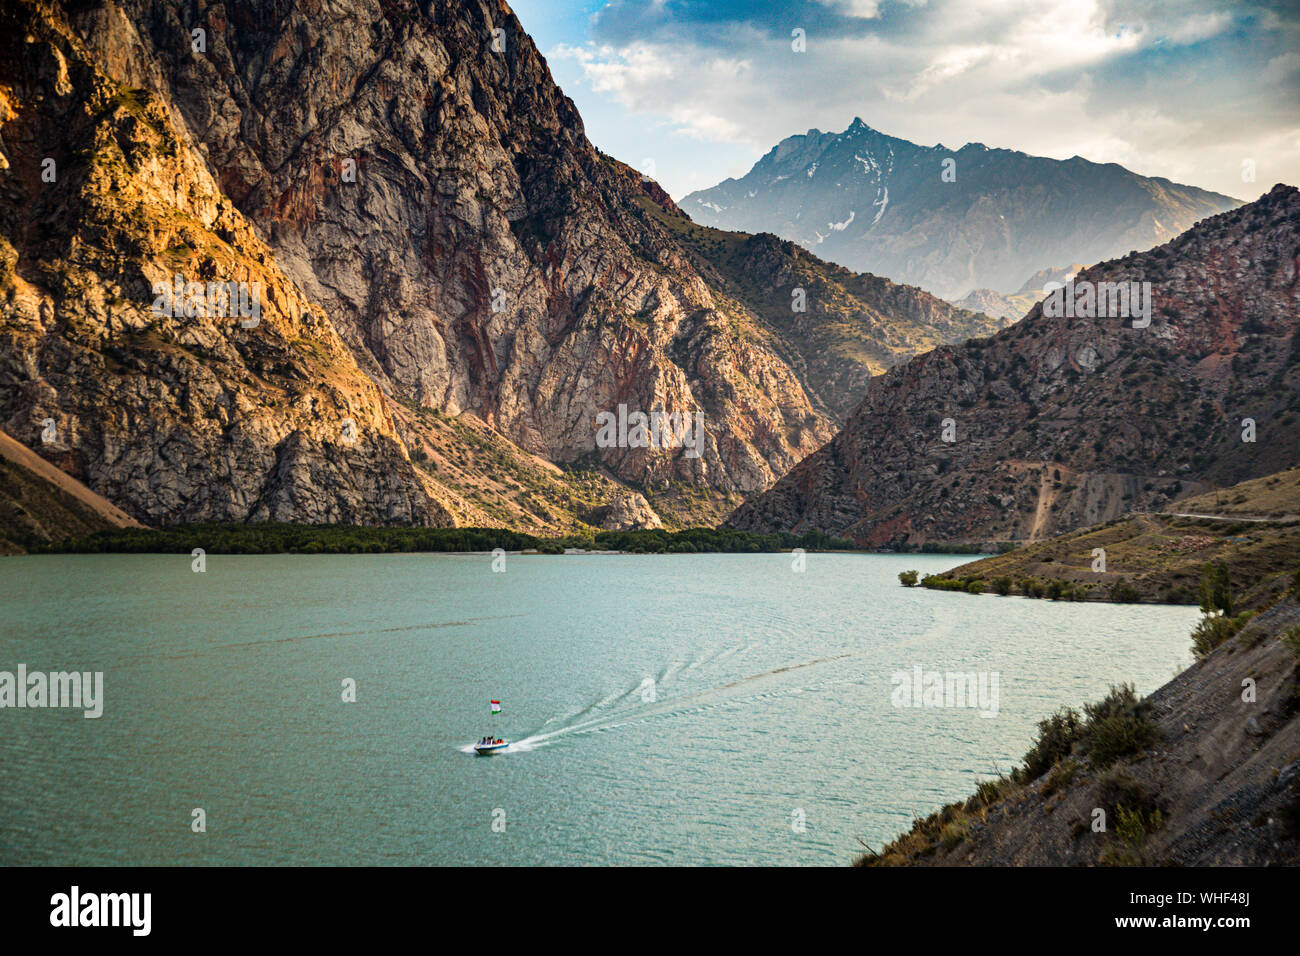 Iskanderkul Lake, formed by a landslide, is located not far from the Tajik capital Dushanbe, Tadjikistan Stock Photo